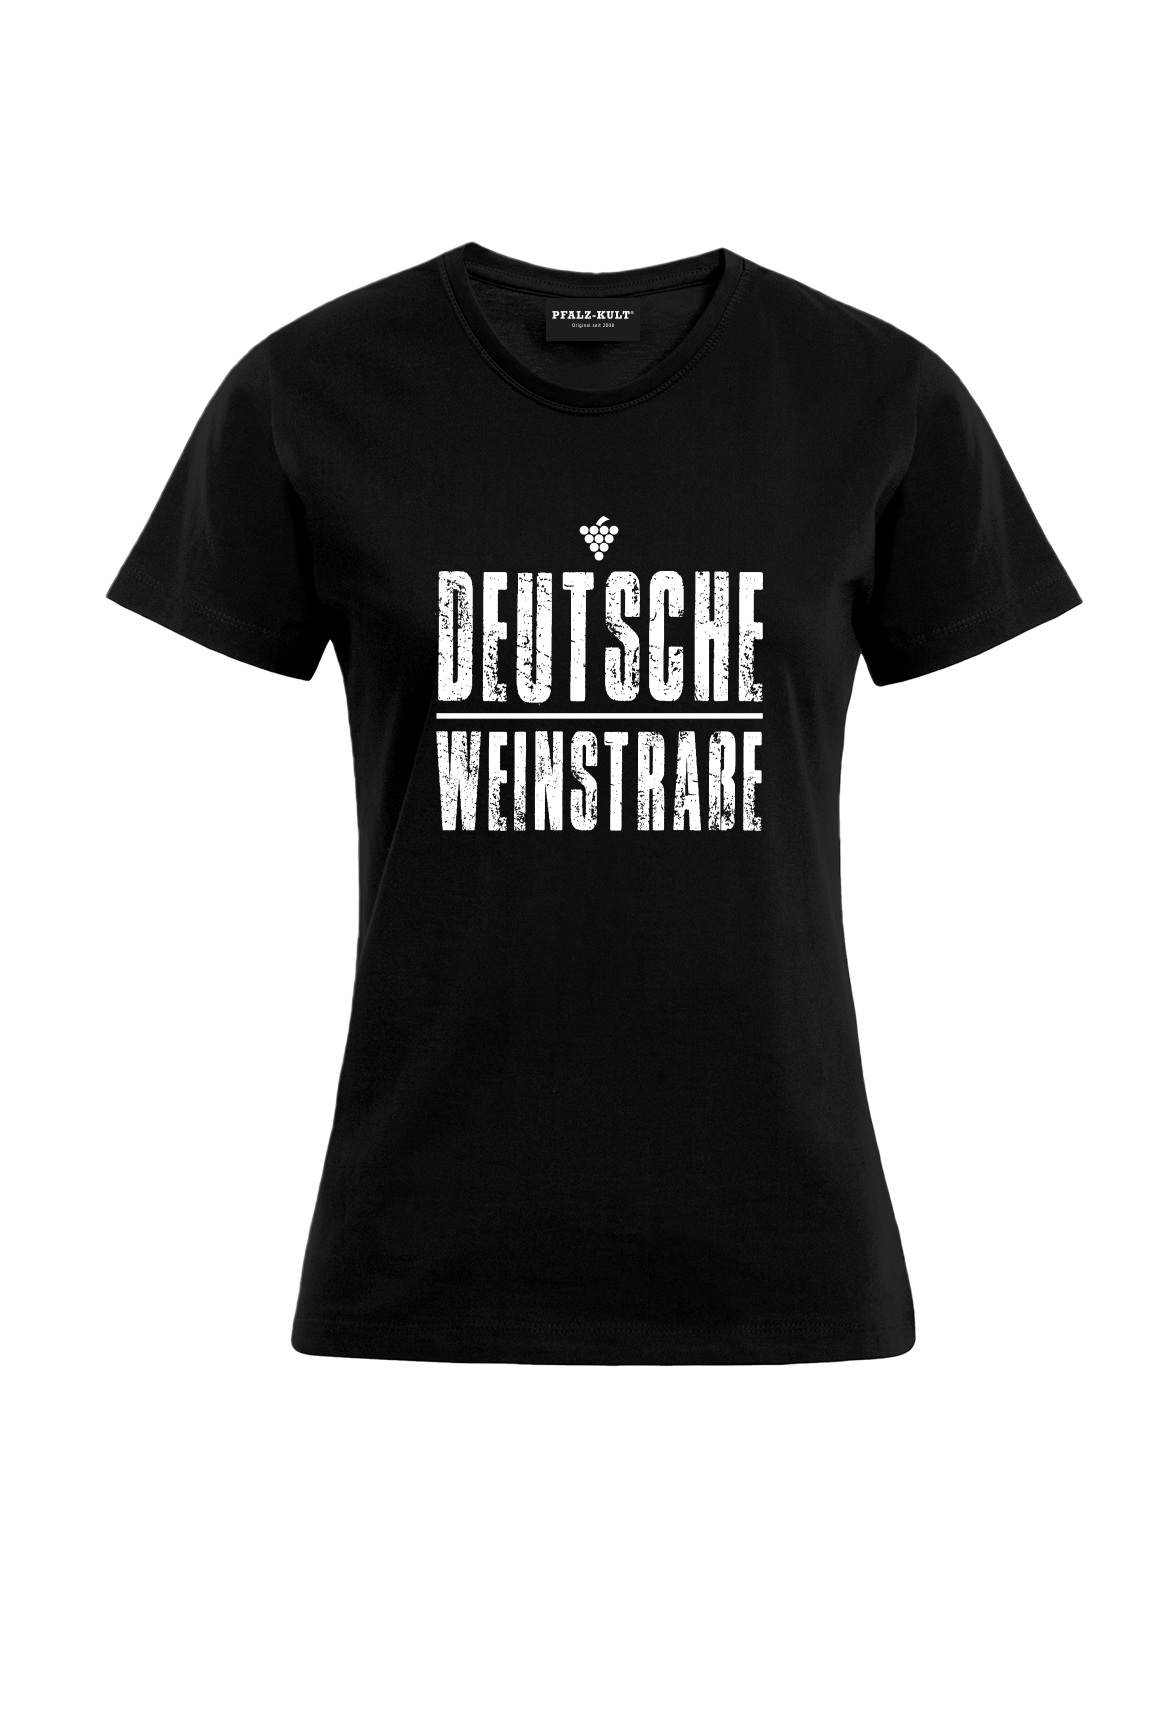 Schwarzes T-Shirt mit dem Aufdruck "Deutsche Weinstrasse" .  Das ideale Geschenk für jedes Pfalzkind vom Textildruck Spezialisten aus Bad Dürkheim.